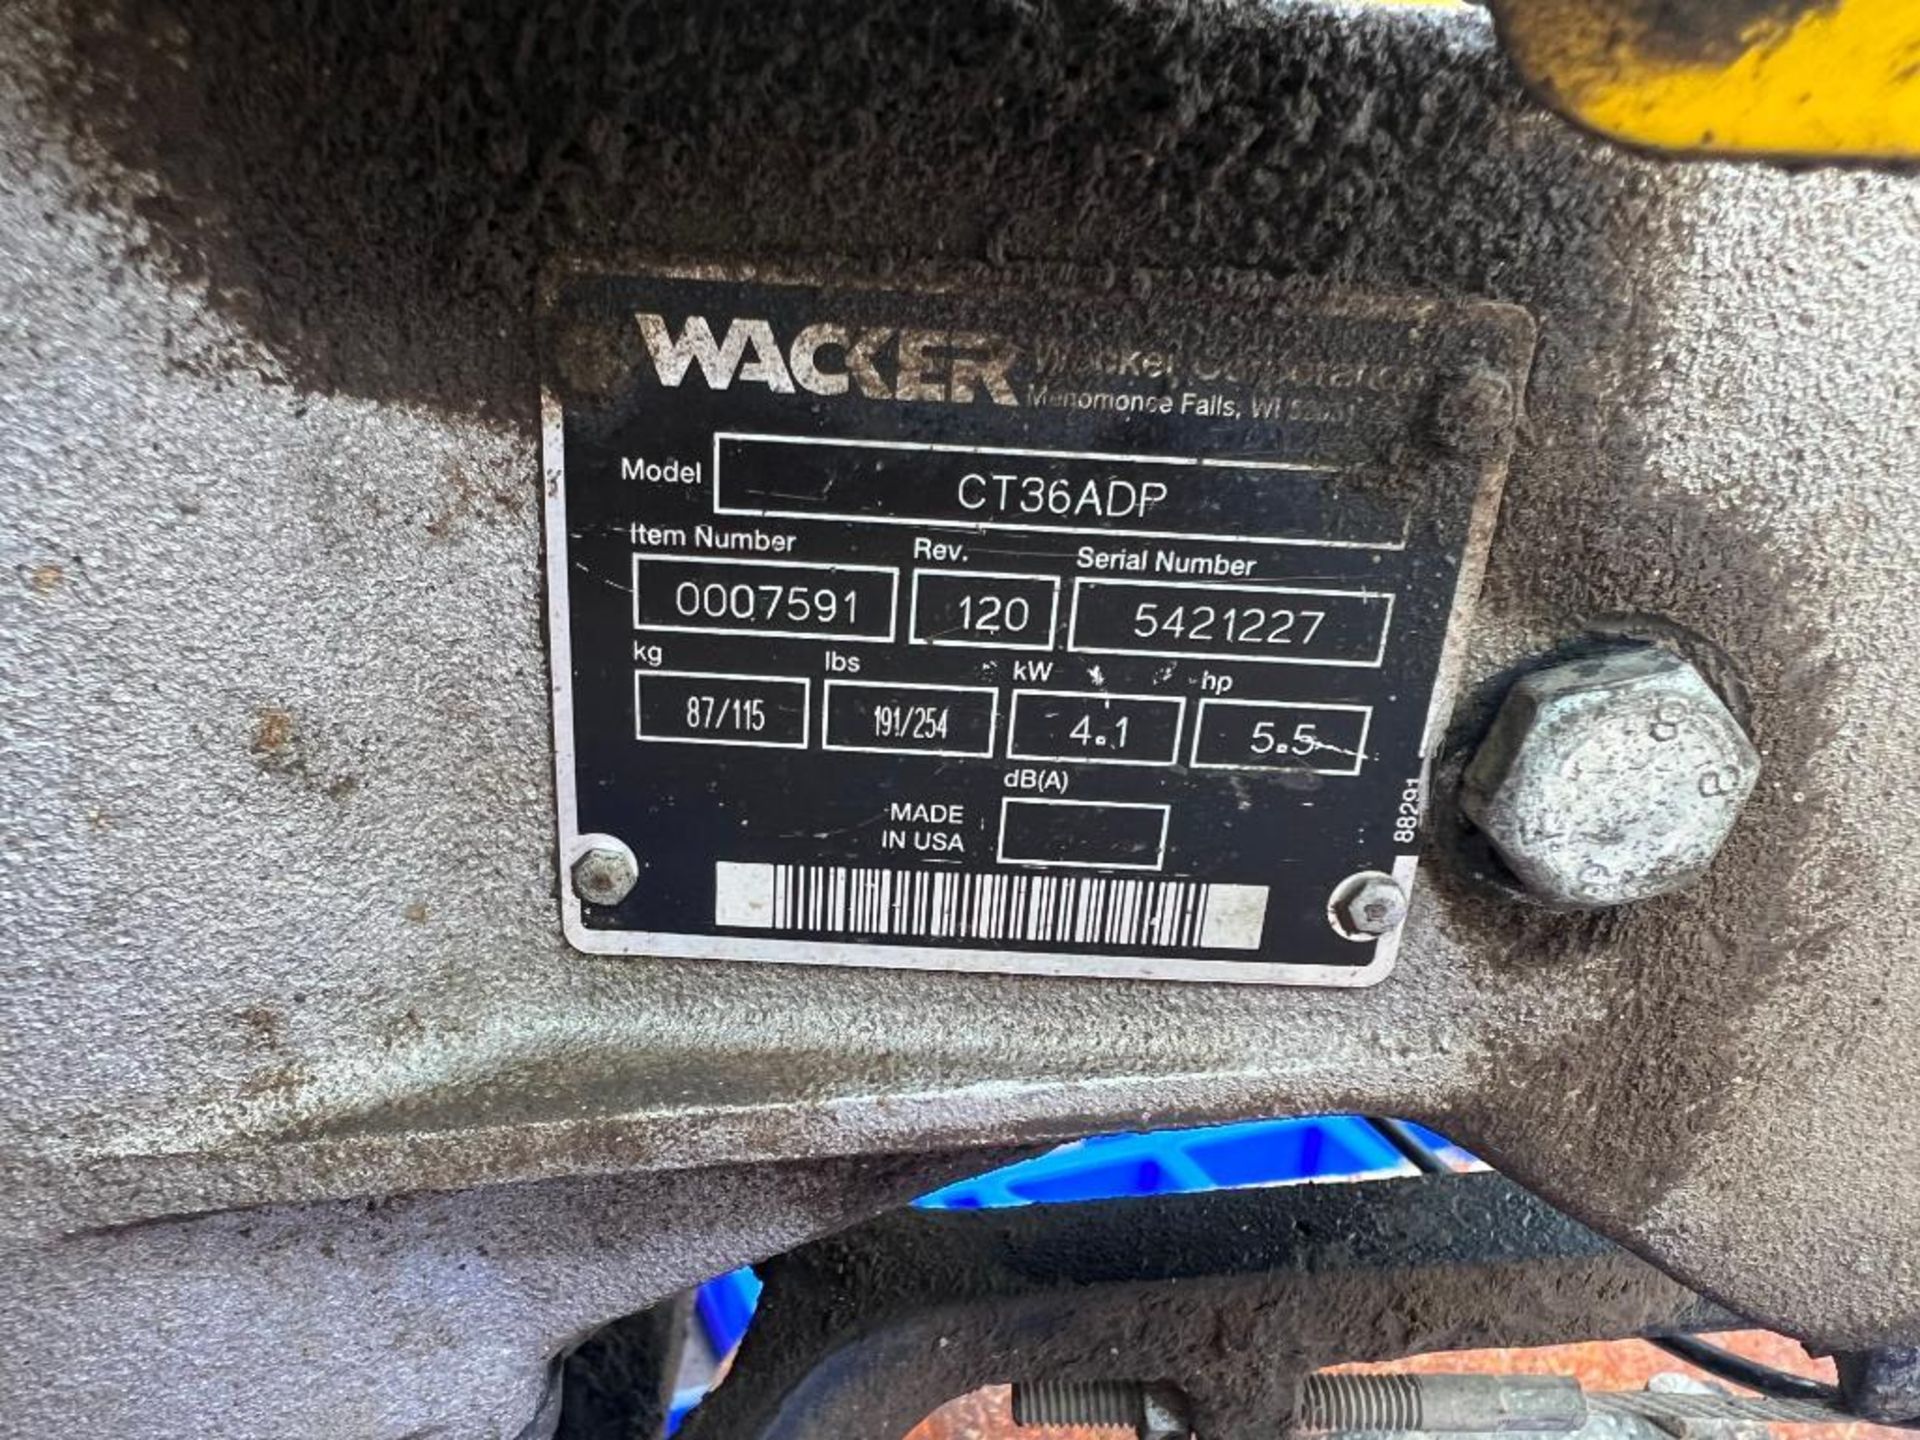 36" Wacker CT36ADP Walk Behind Power Trowel, Serial #5421227, Honda GX 160 Engine. Located in Mt. Pl - Image 4 of 5